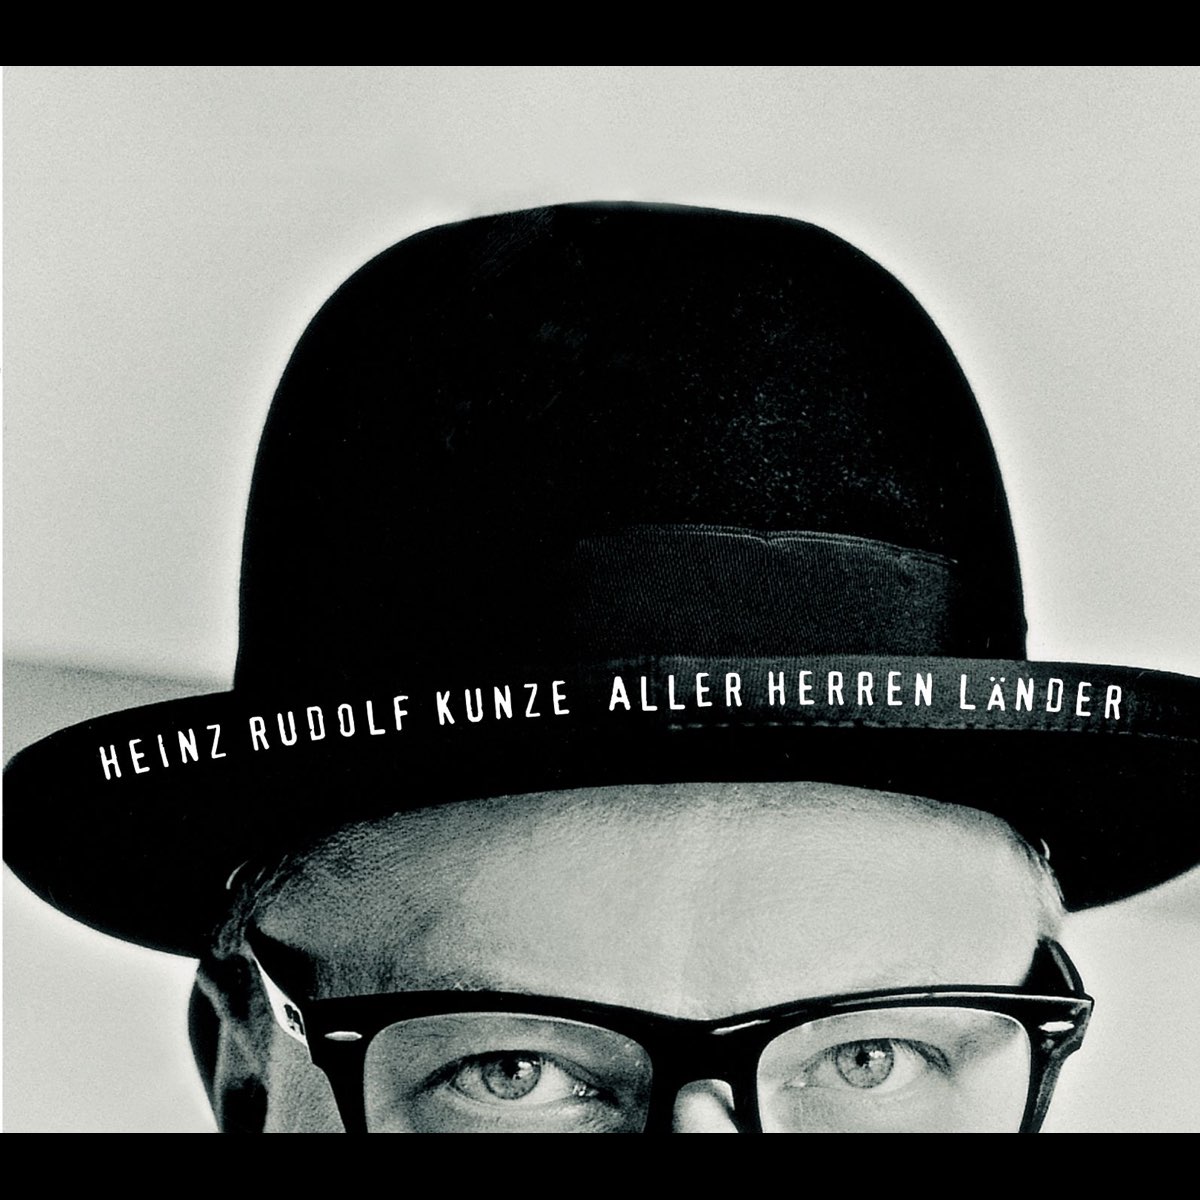 Aller Herren Länder - EP by Heinz Rudolf Kunze on Apple Music